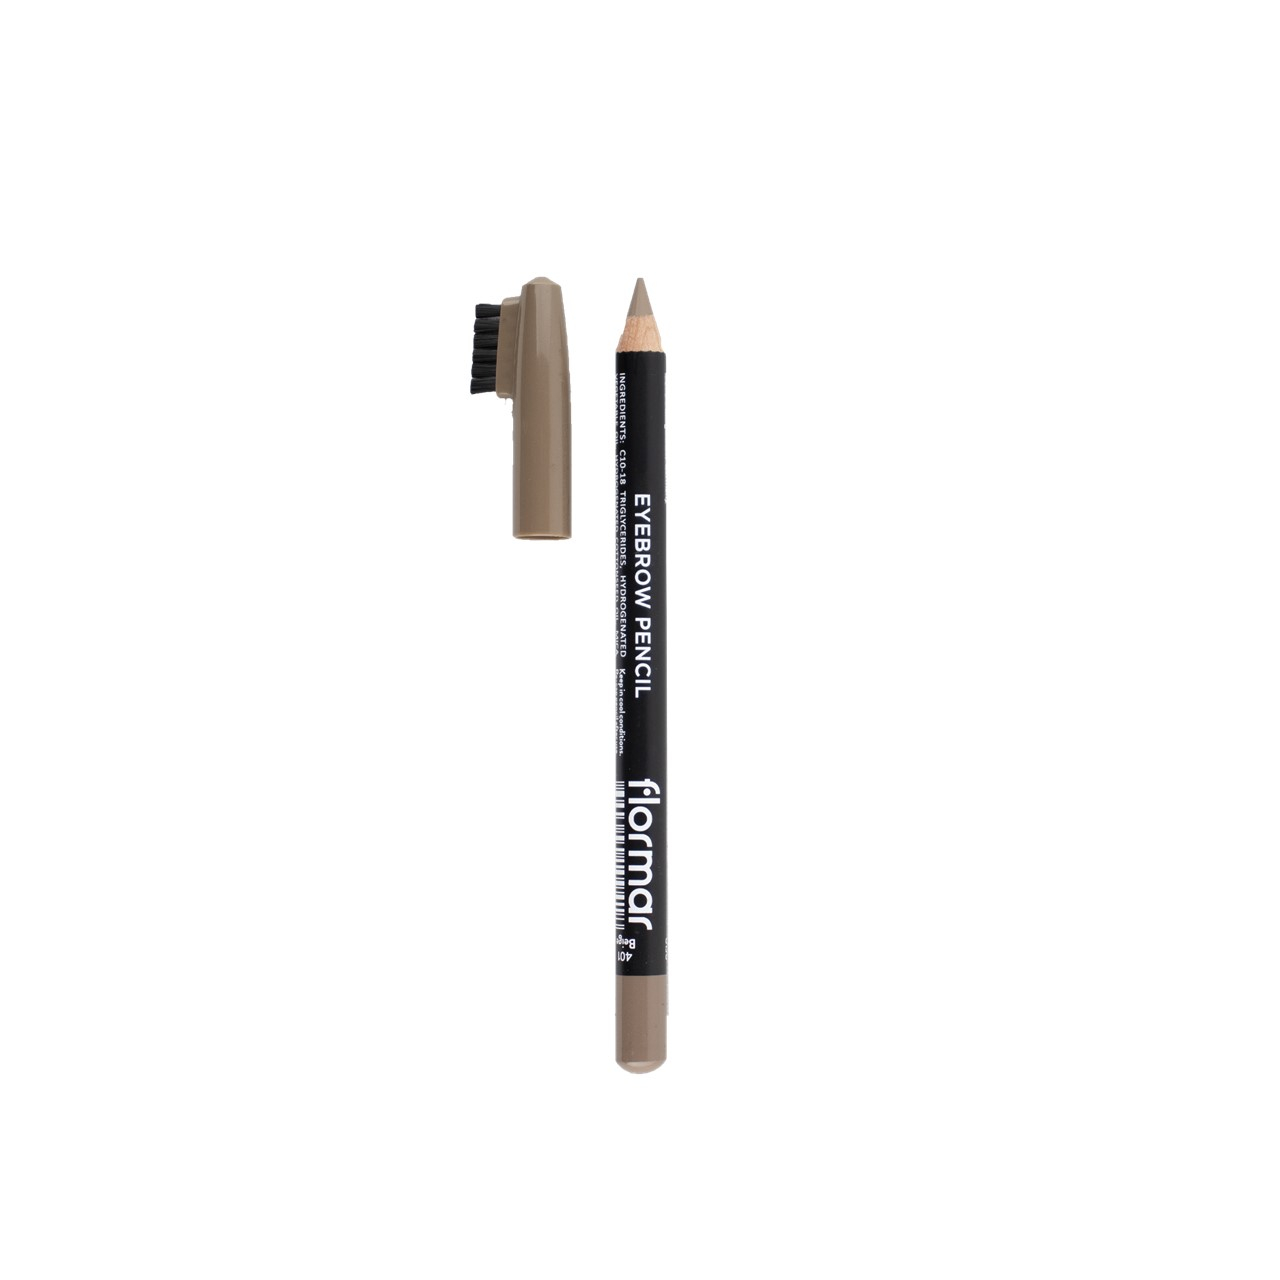 Flormar Eyebrow Pencil 401 Beige 0.35g (0.01oz)